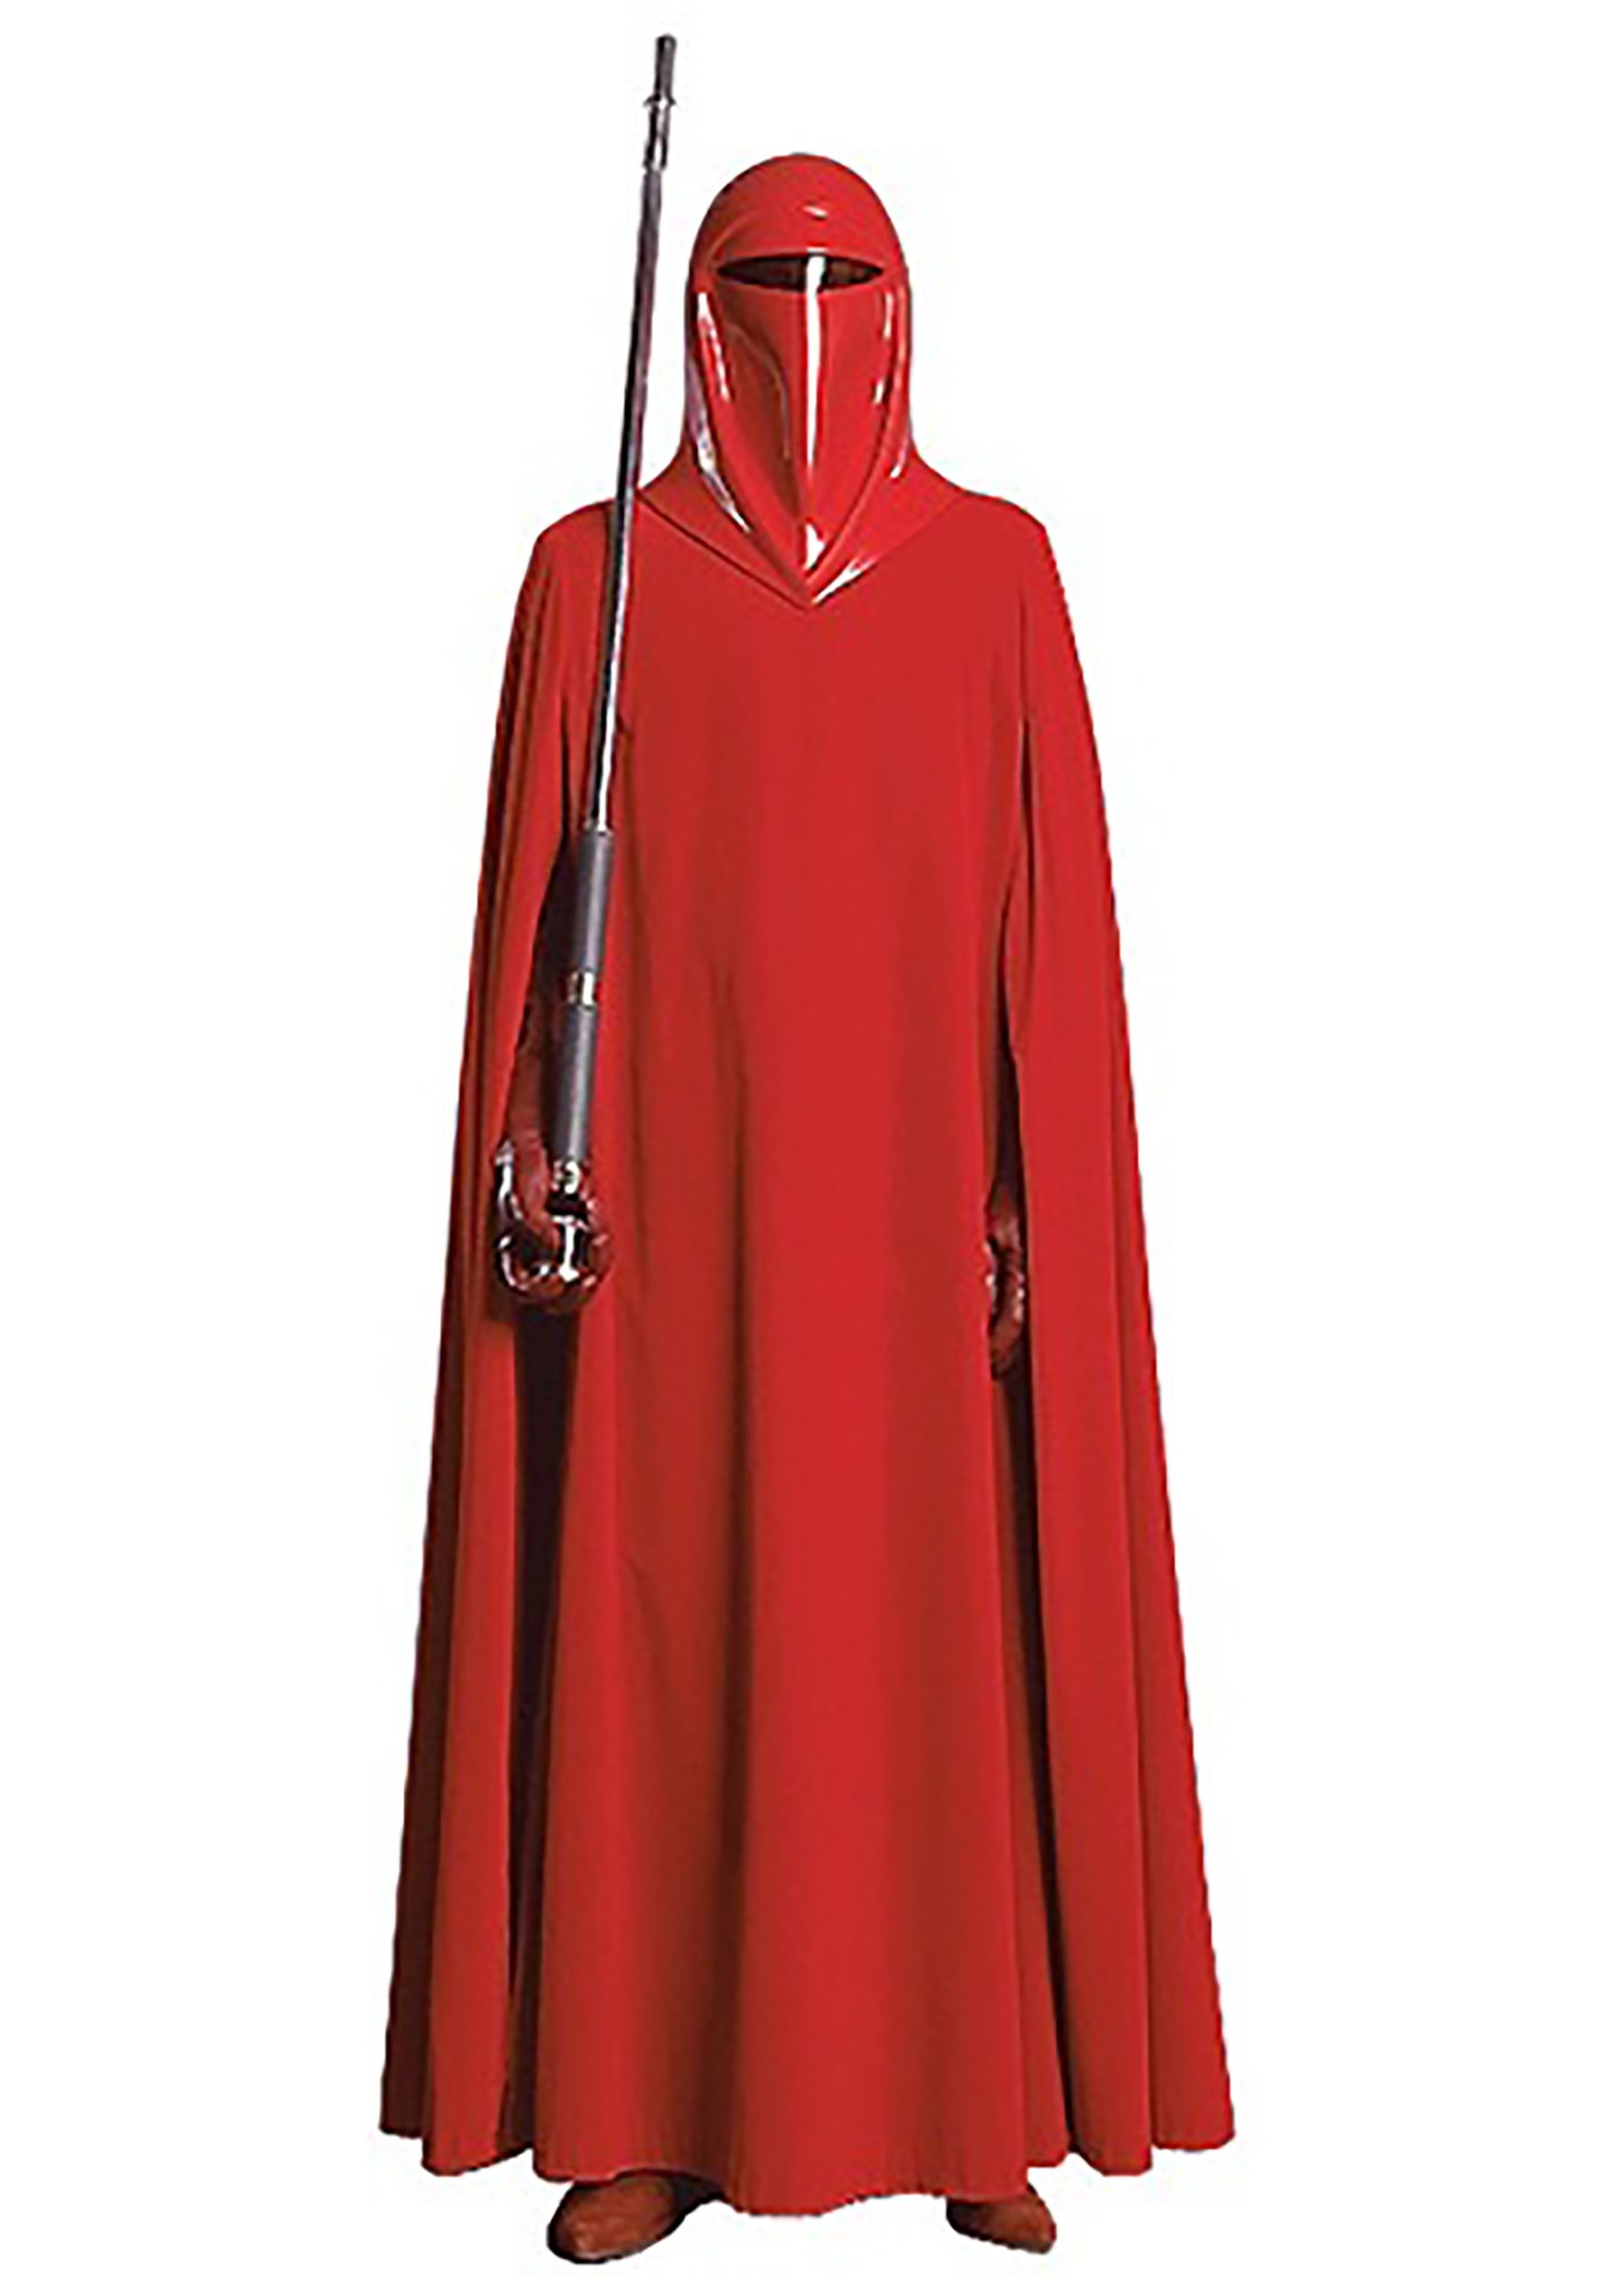 mest bodsøvelser Fascinate Supreme Edition Imperial Guard Adult Costume